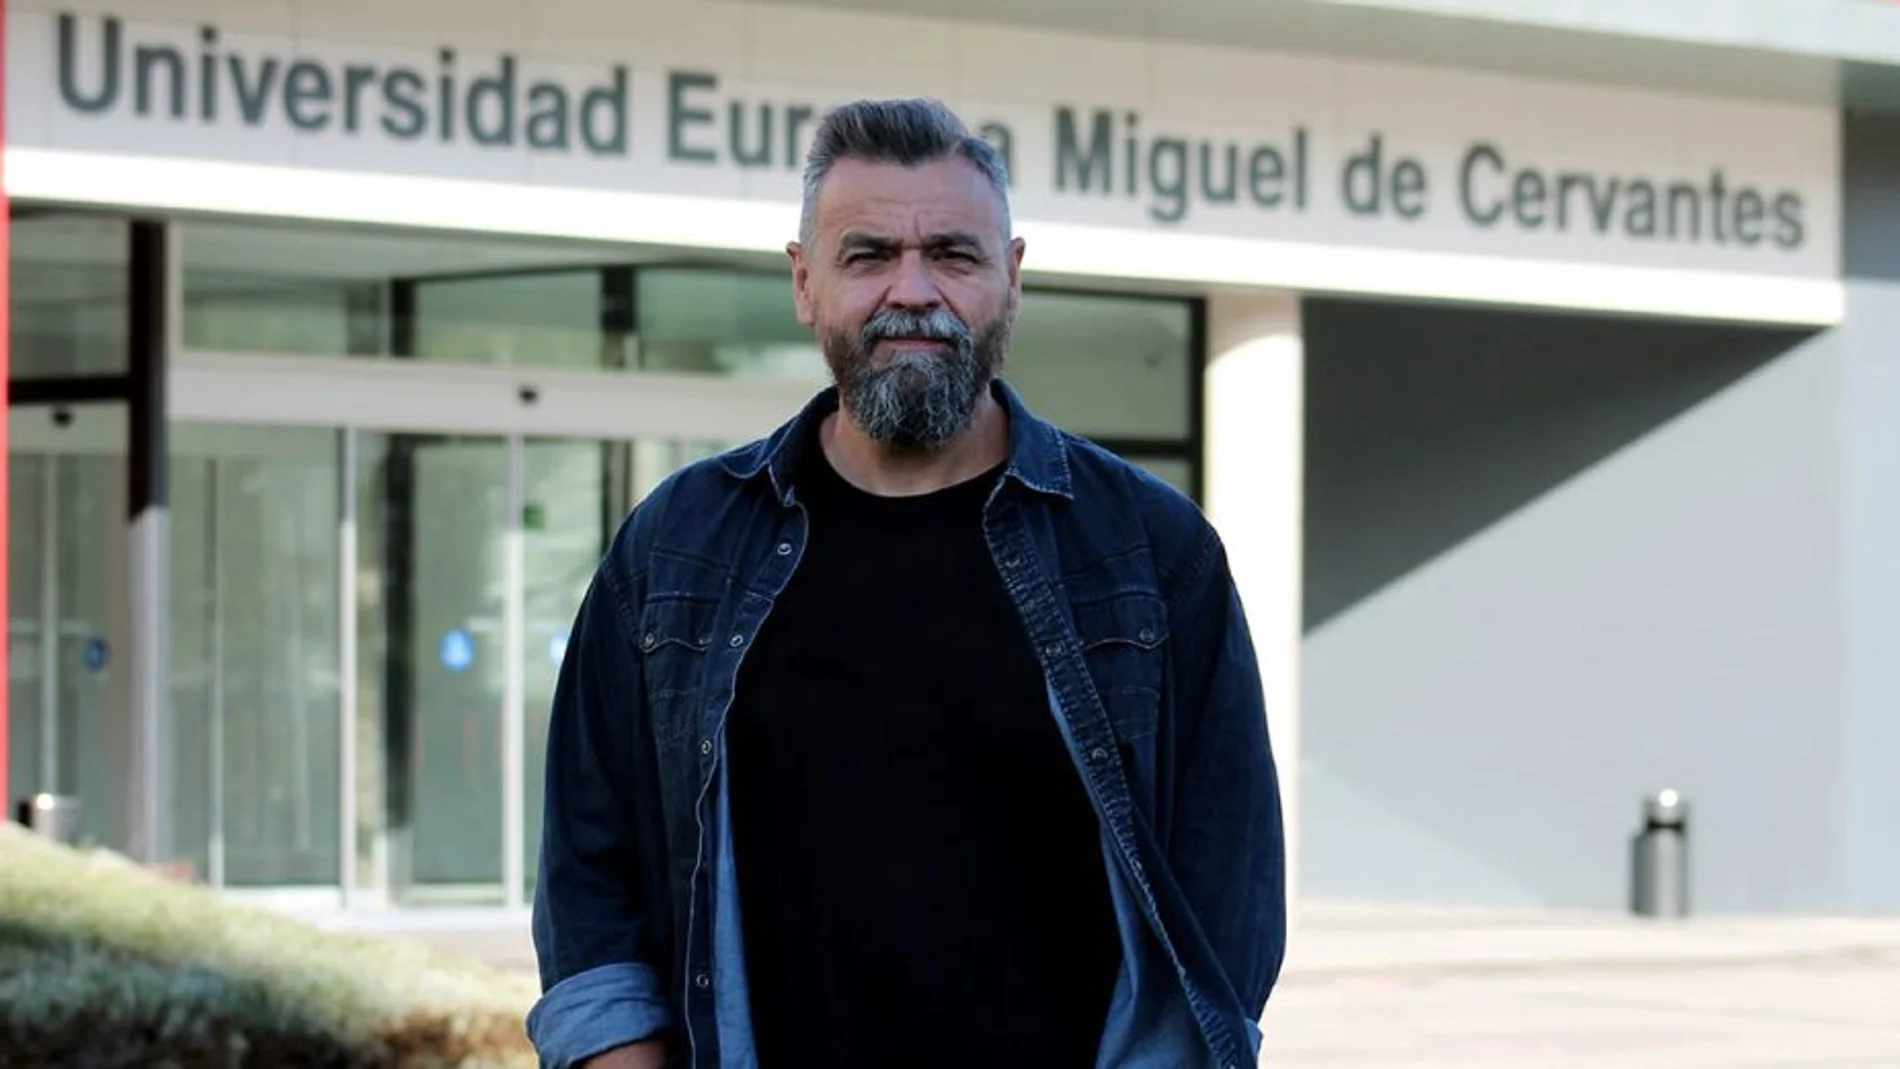 El doctor en Ciencias Físicas de la Universidad Europea Miguel de Cervantes, José Francisco Sanz Requena